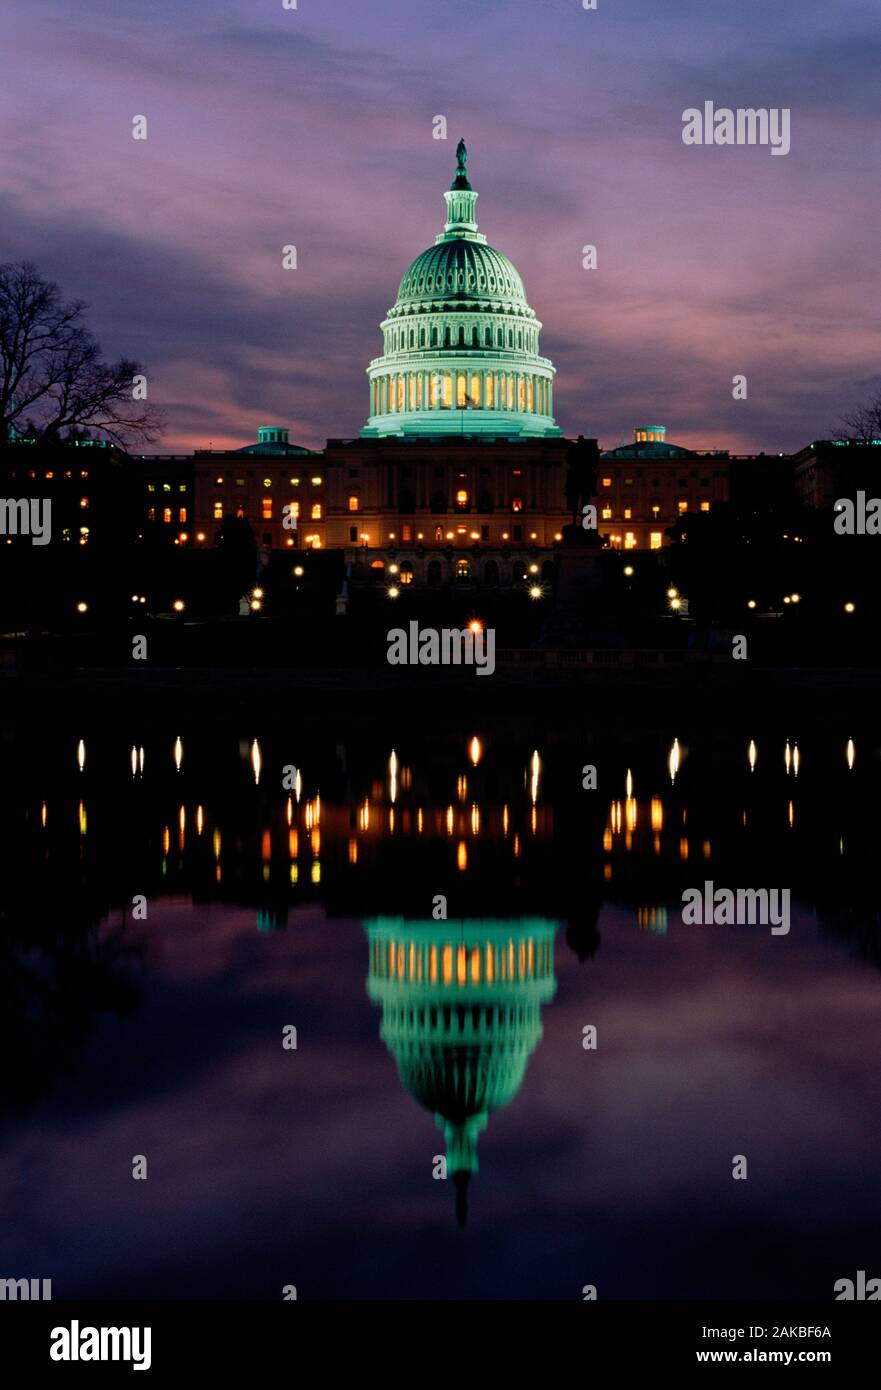 United States Capitol Building at dusk, Washington DC, USA Stock Photo